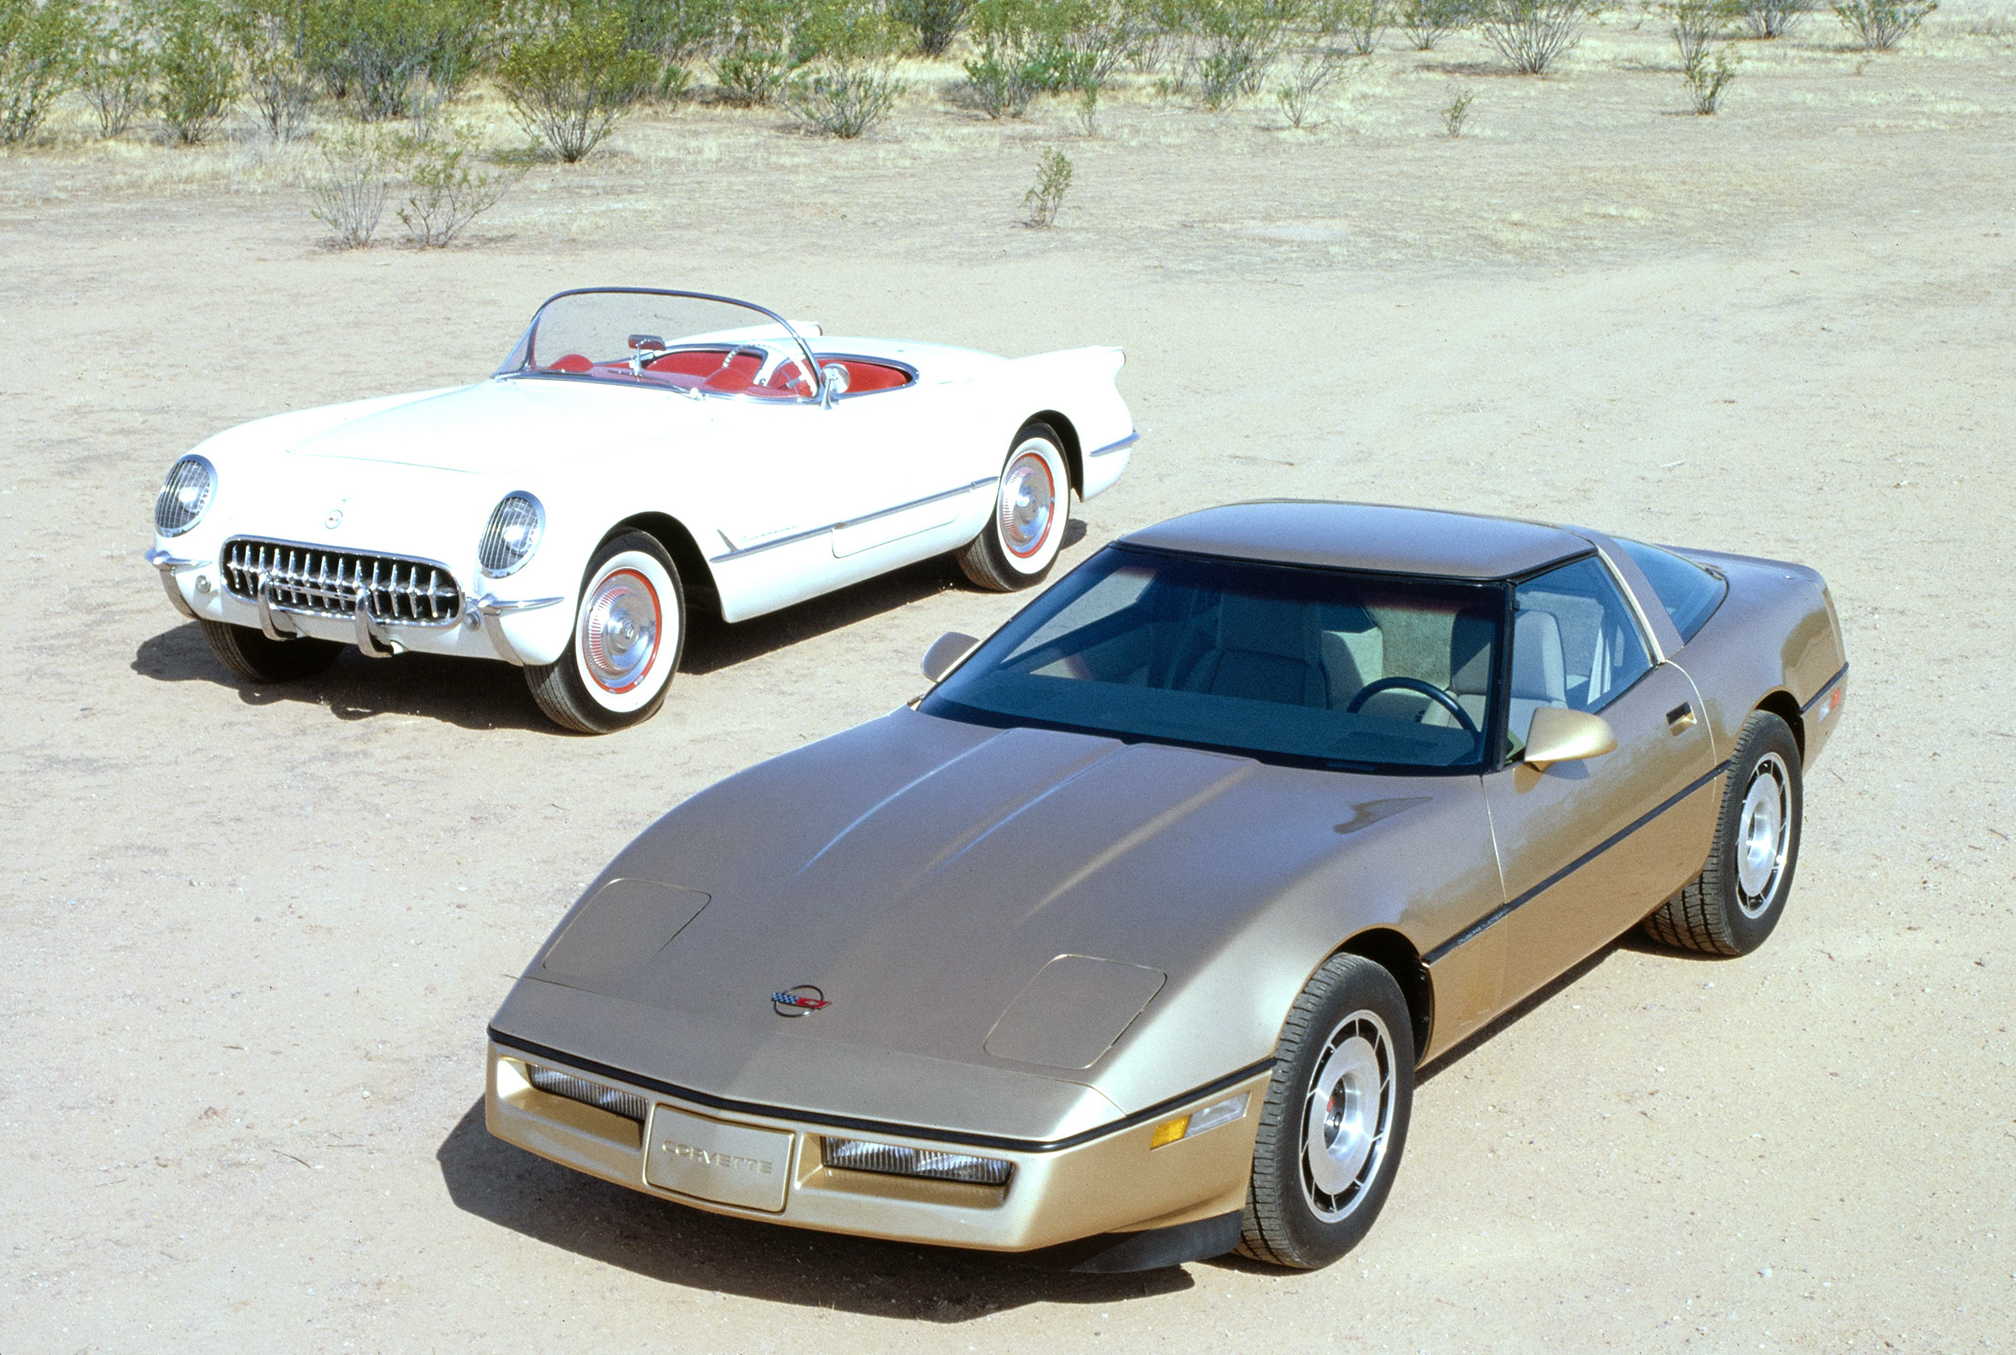 1983 Corvette Wallpapers